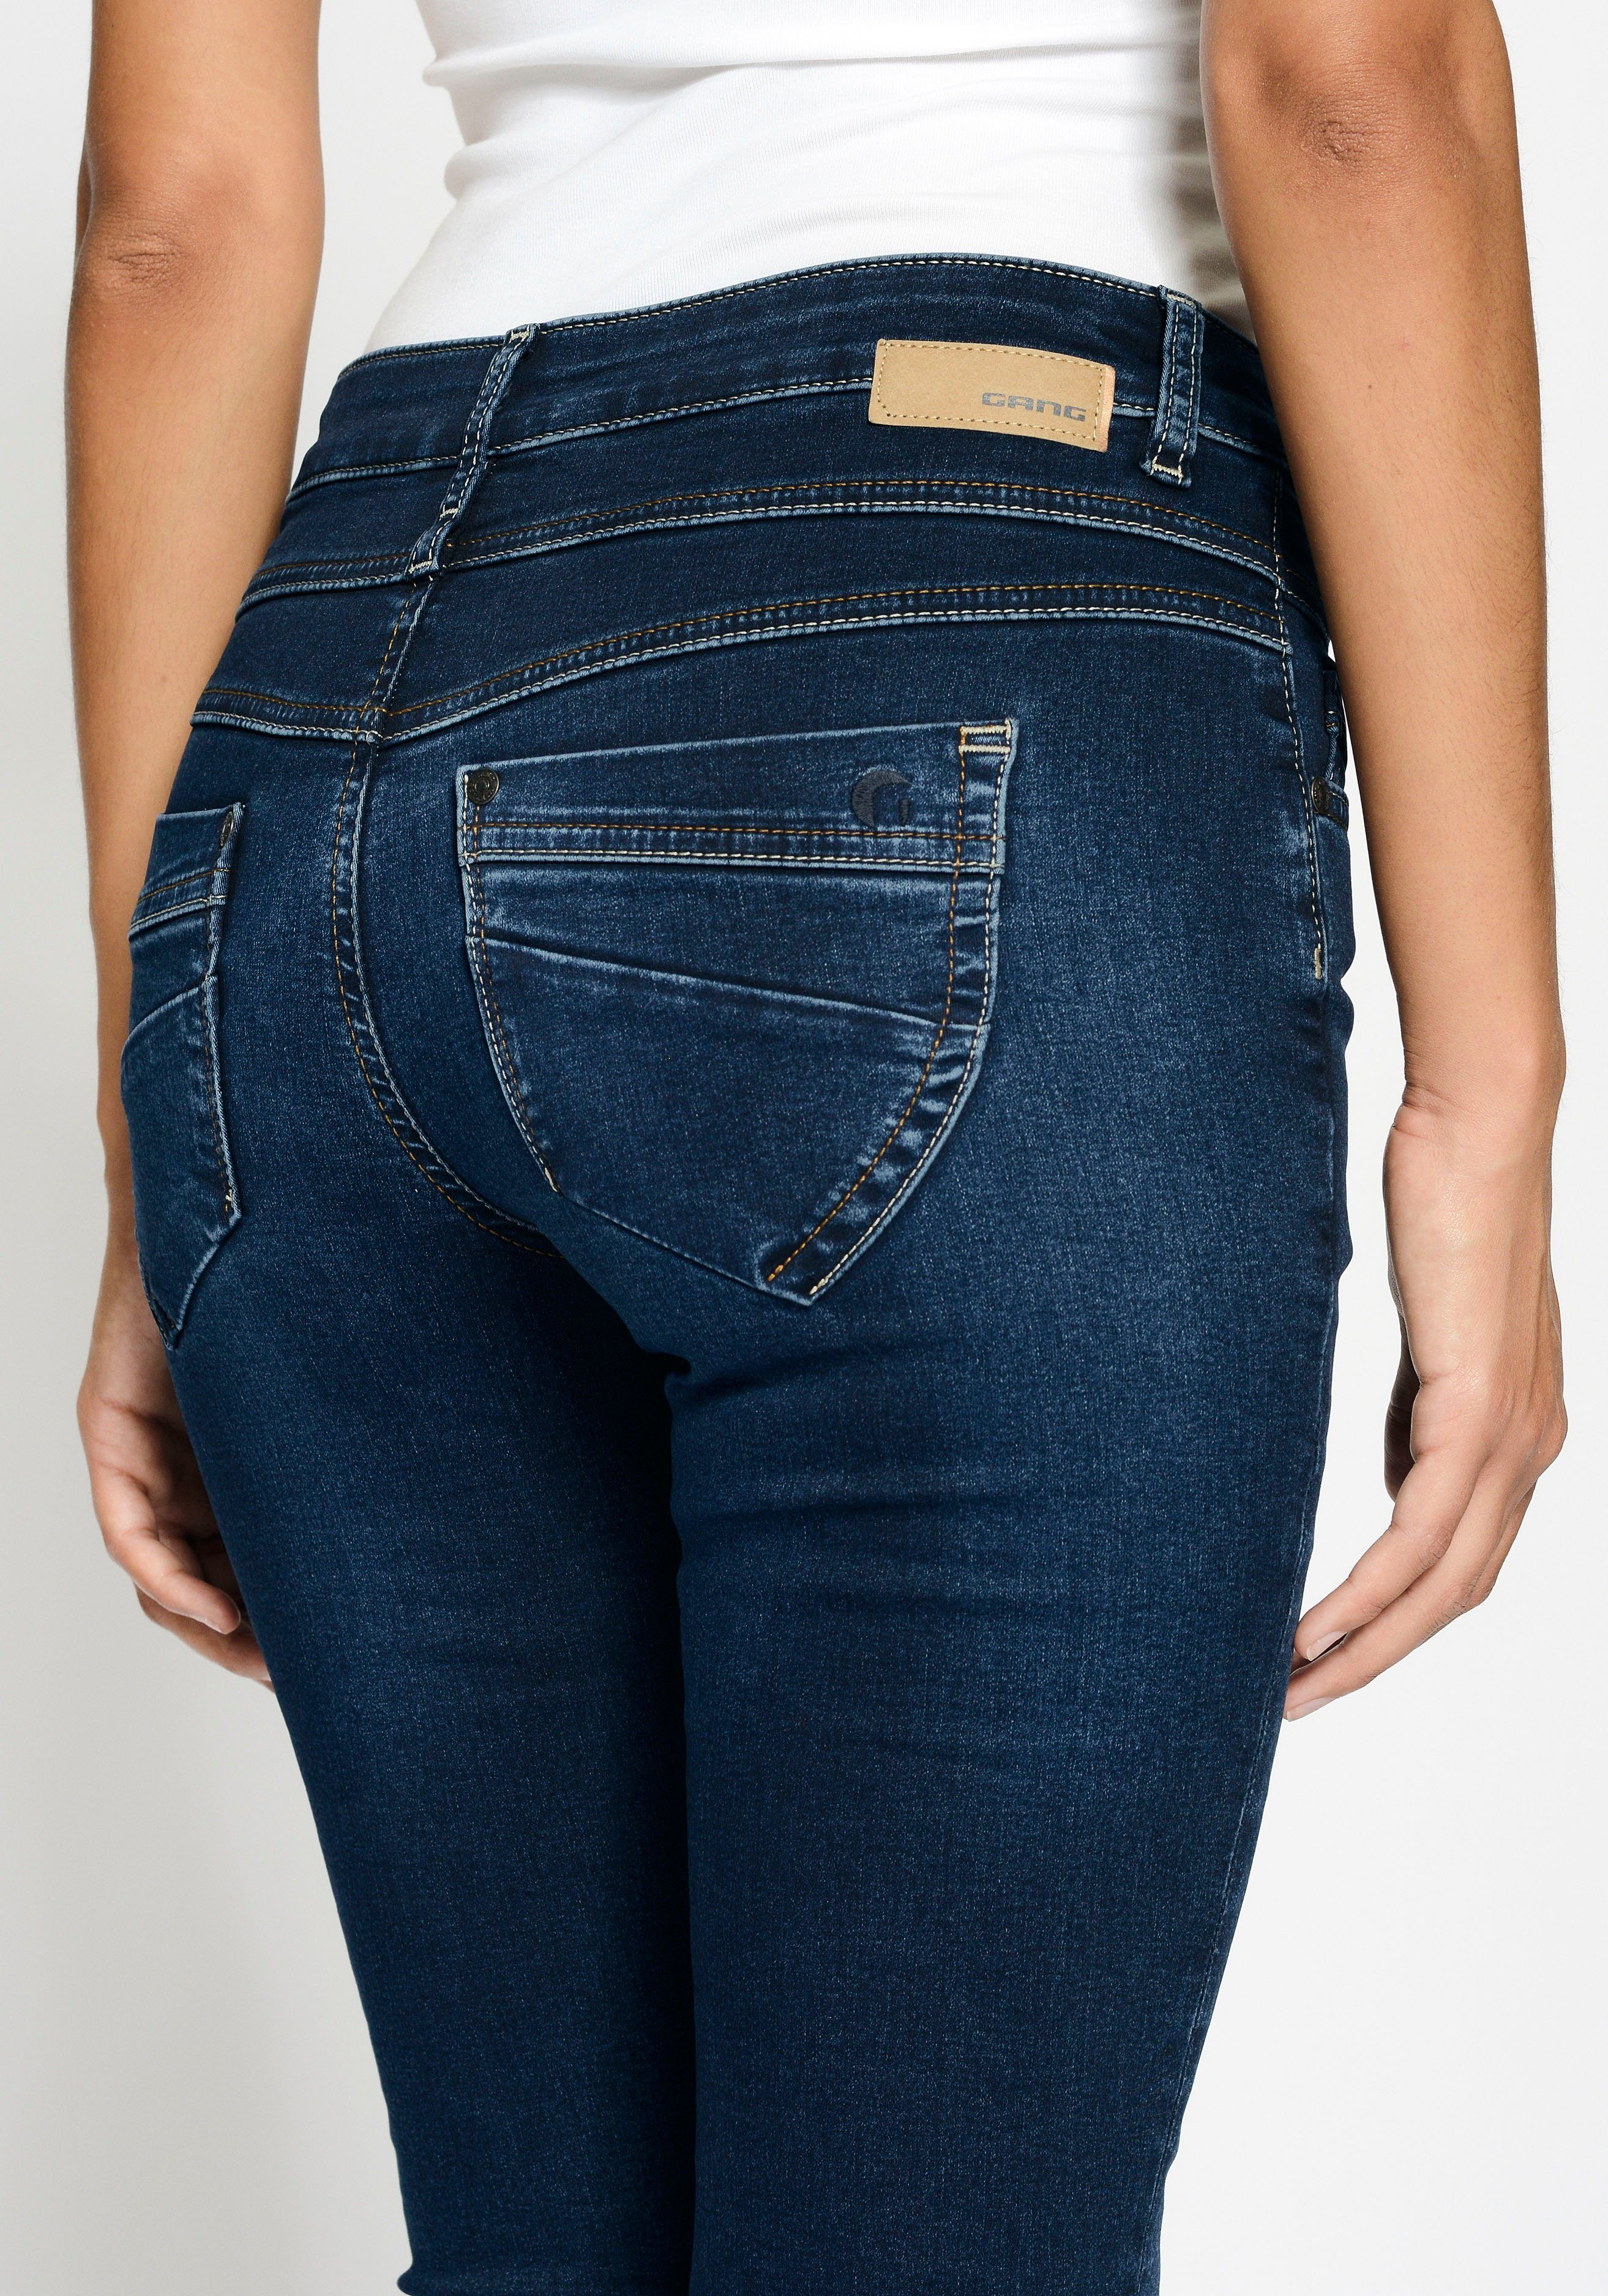 GANG Skinny-fit-Jeans 94MORA dark mit Passe deep vorne blue und 3-Knopf-Verschluss